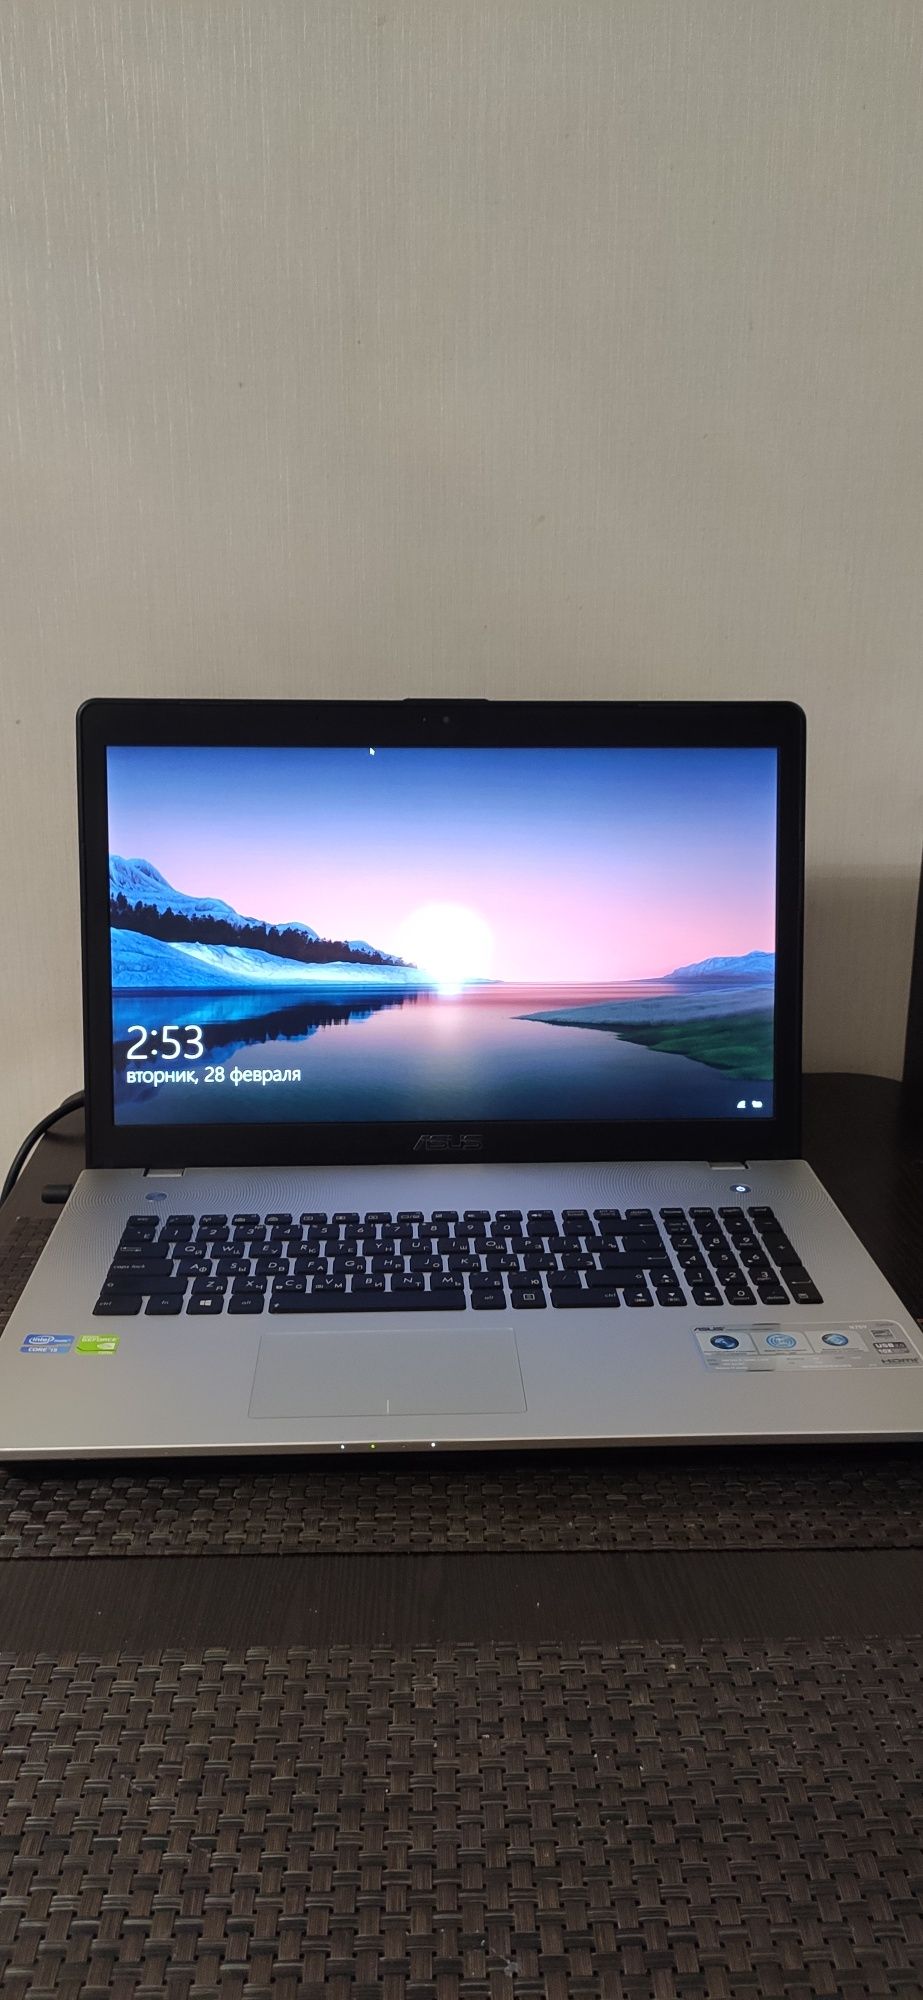 Отличный и стильный ноутбук ASUS N76V